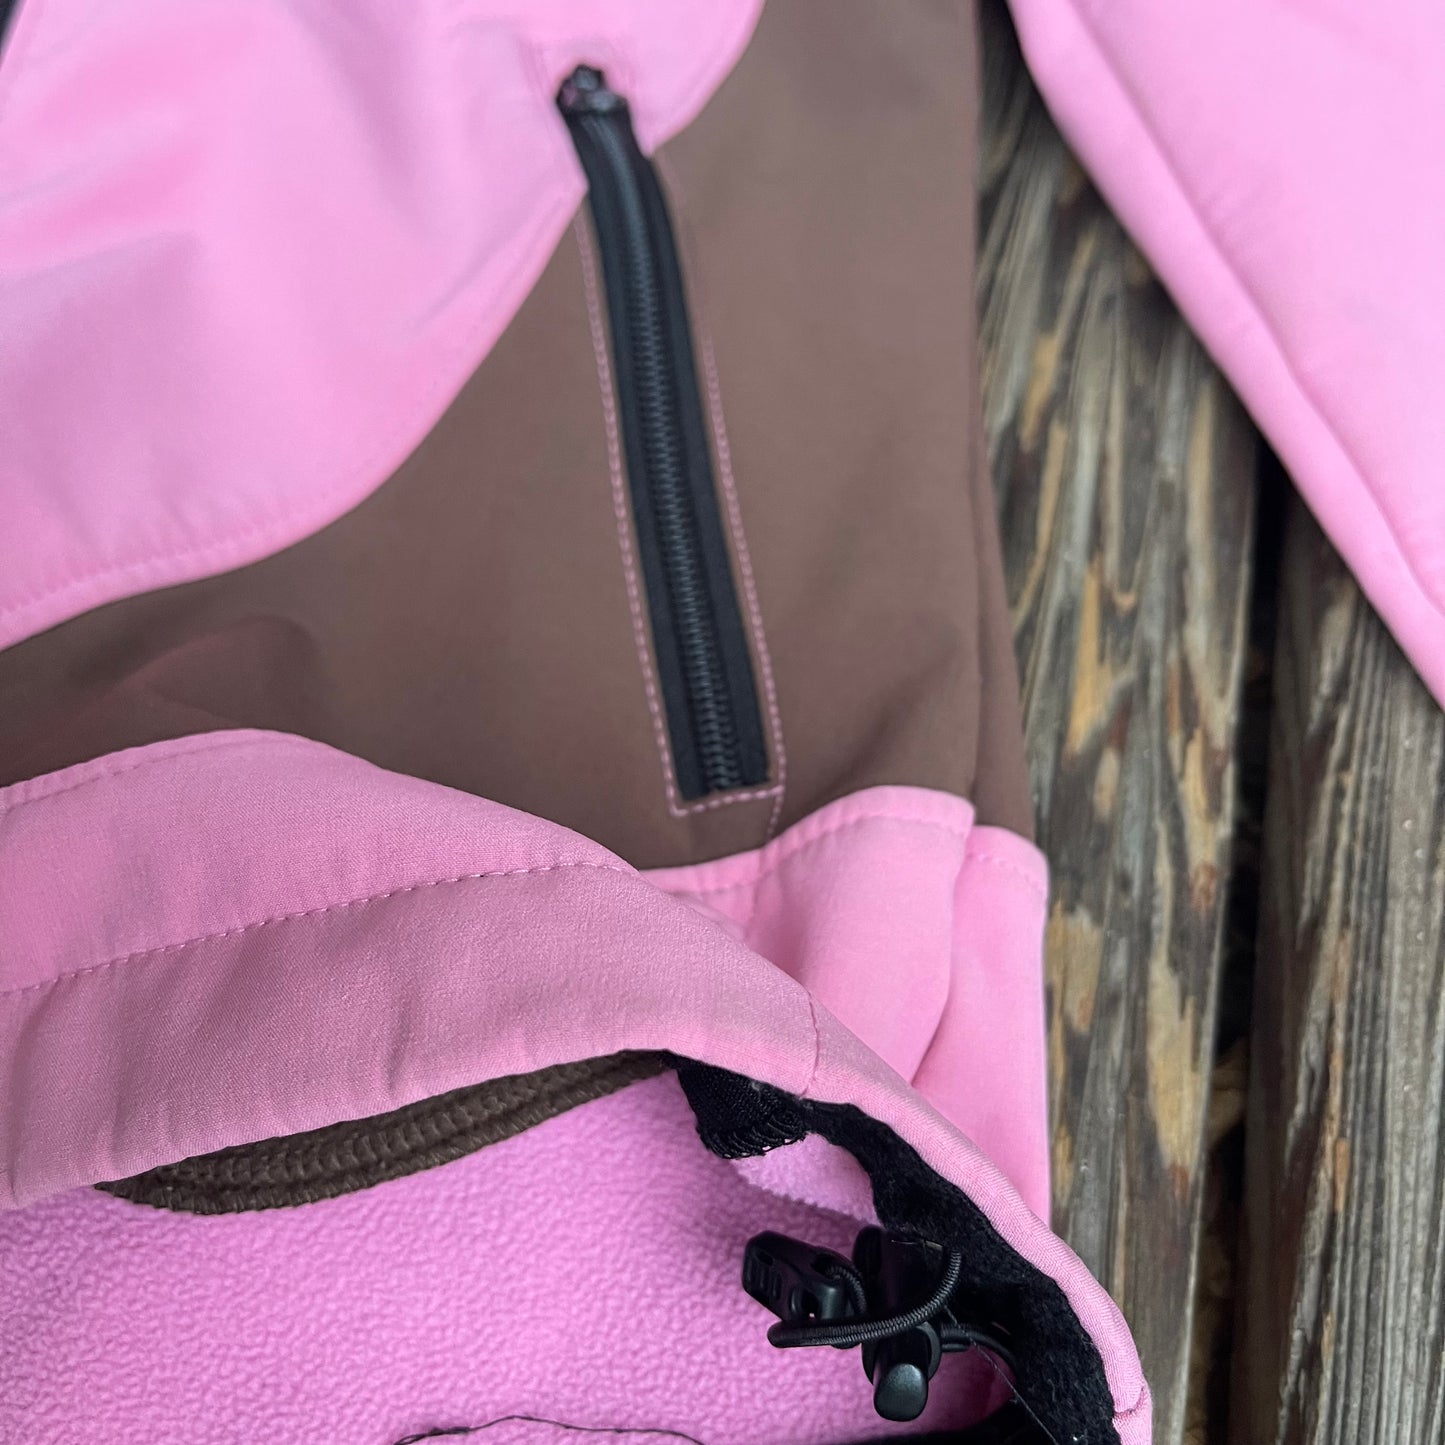 Softshell Jacke von Bergans XS/ S (36) rosa-braun